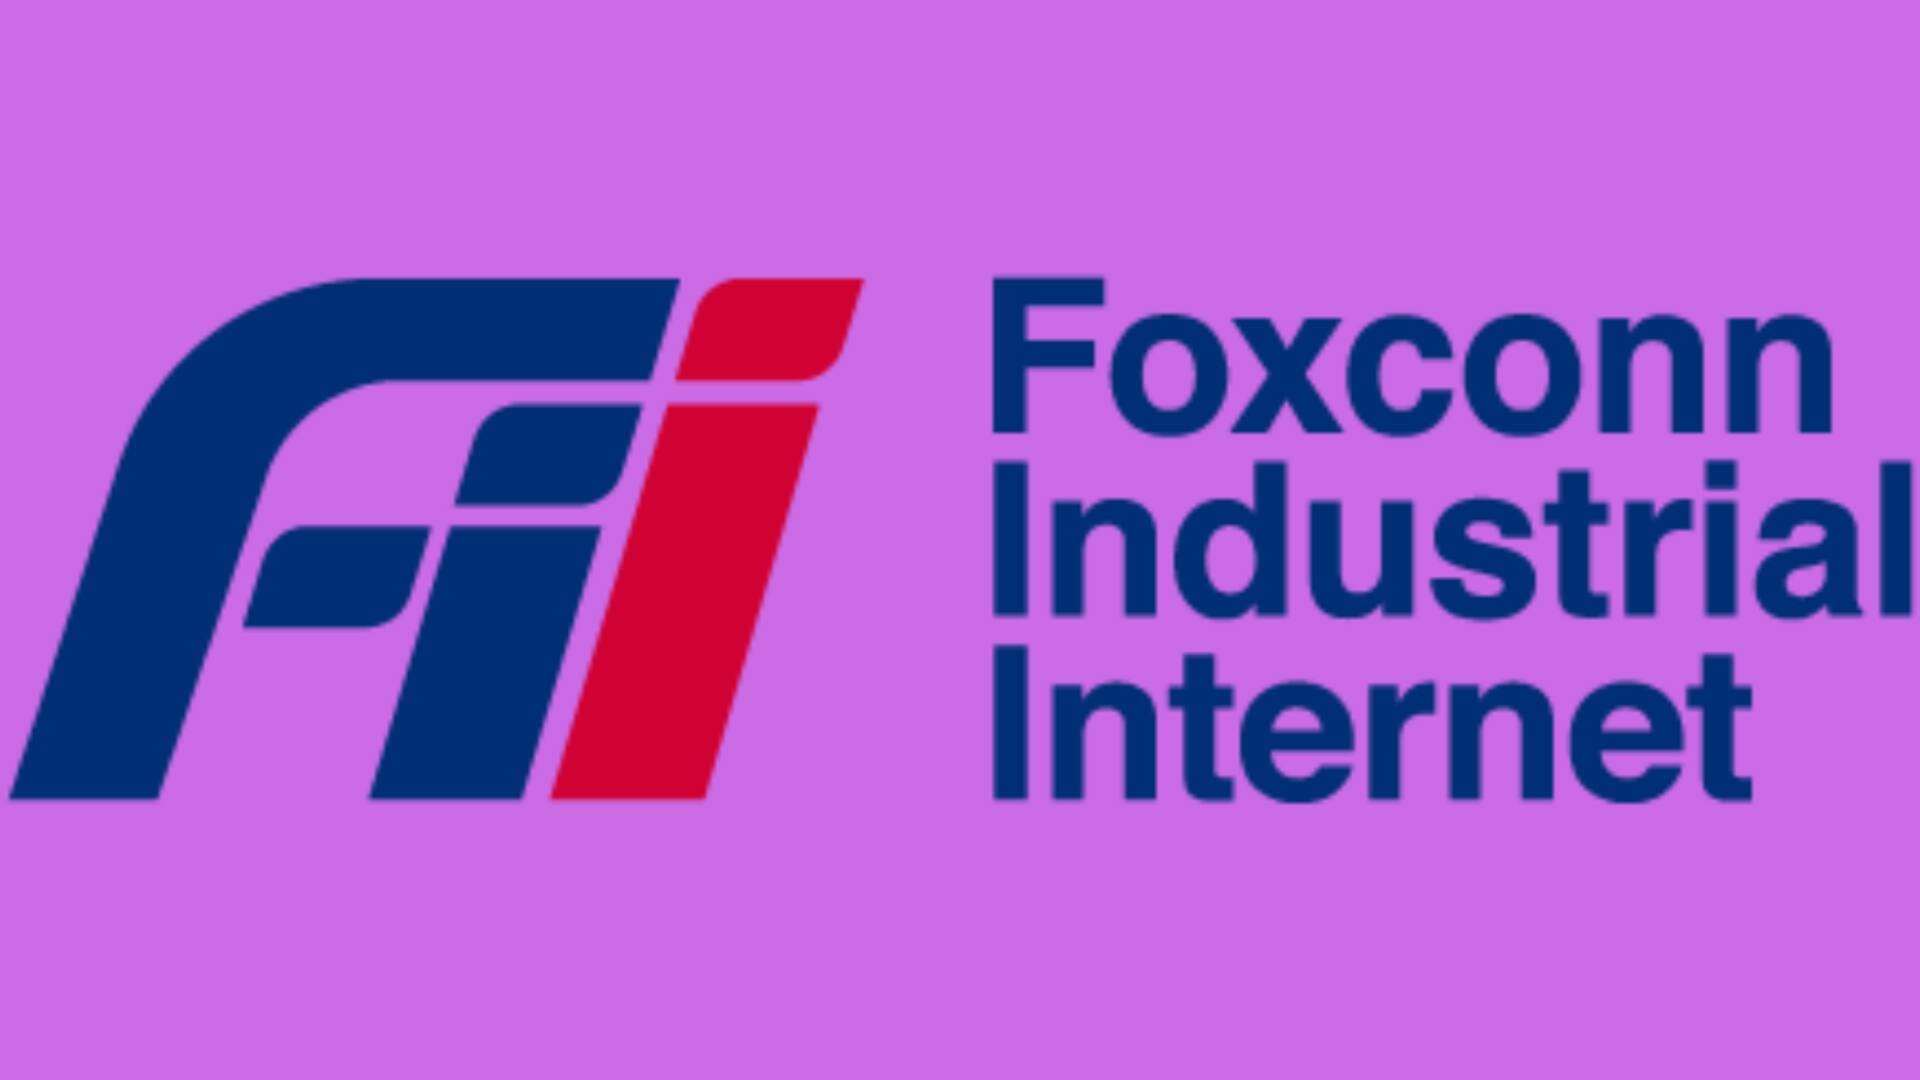 फॉक्सकॉन इंडस्ट्रियल इंटरनेट कर्नाटक में निवेश करेगी 8,800 करोड़ रुपये